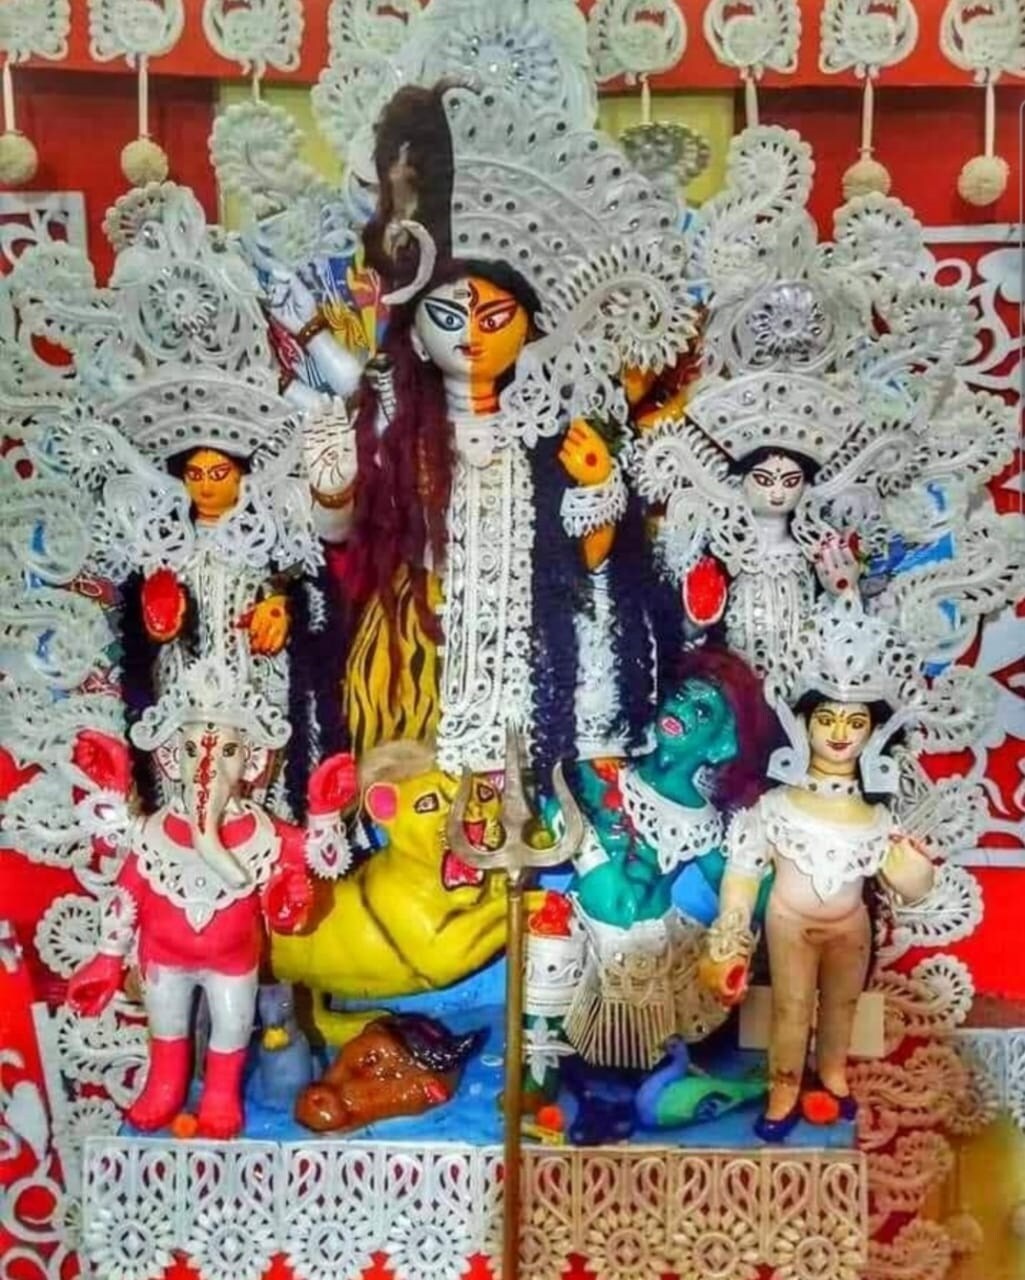 অভিনব পুজো, সংগ্রামী জীবনযাপন,তথ্যচিত্রে শহরের উৎসবের এক ভিন্ন রূপ অর্ধনারীশ্বর